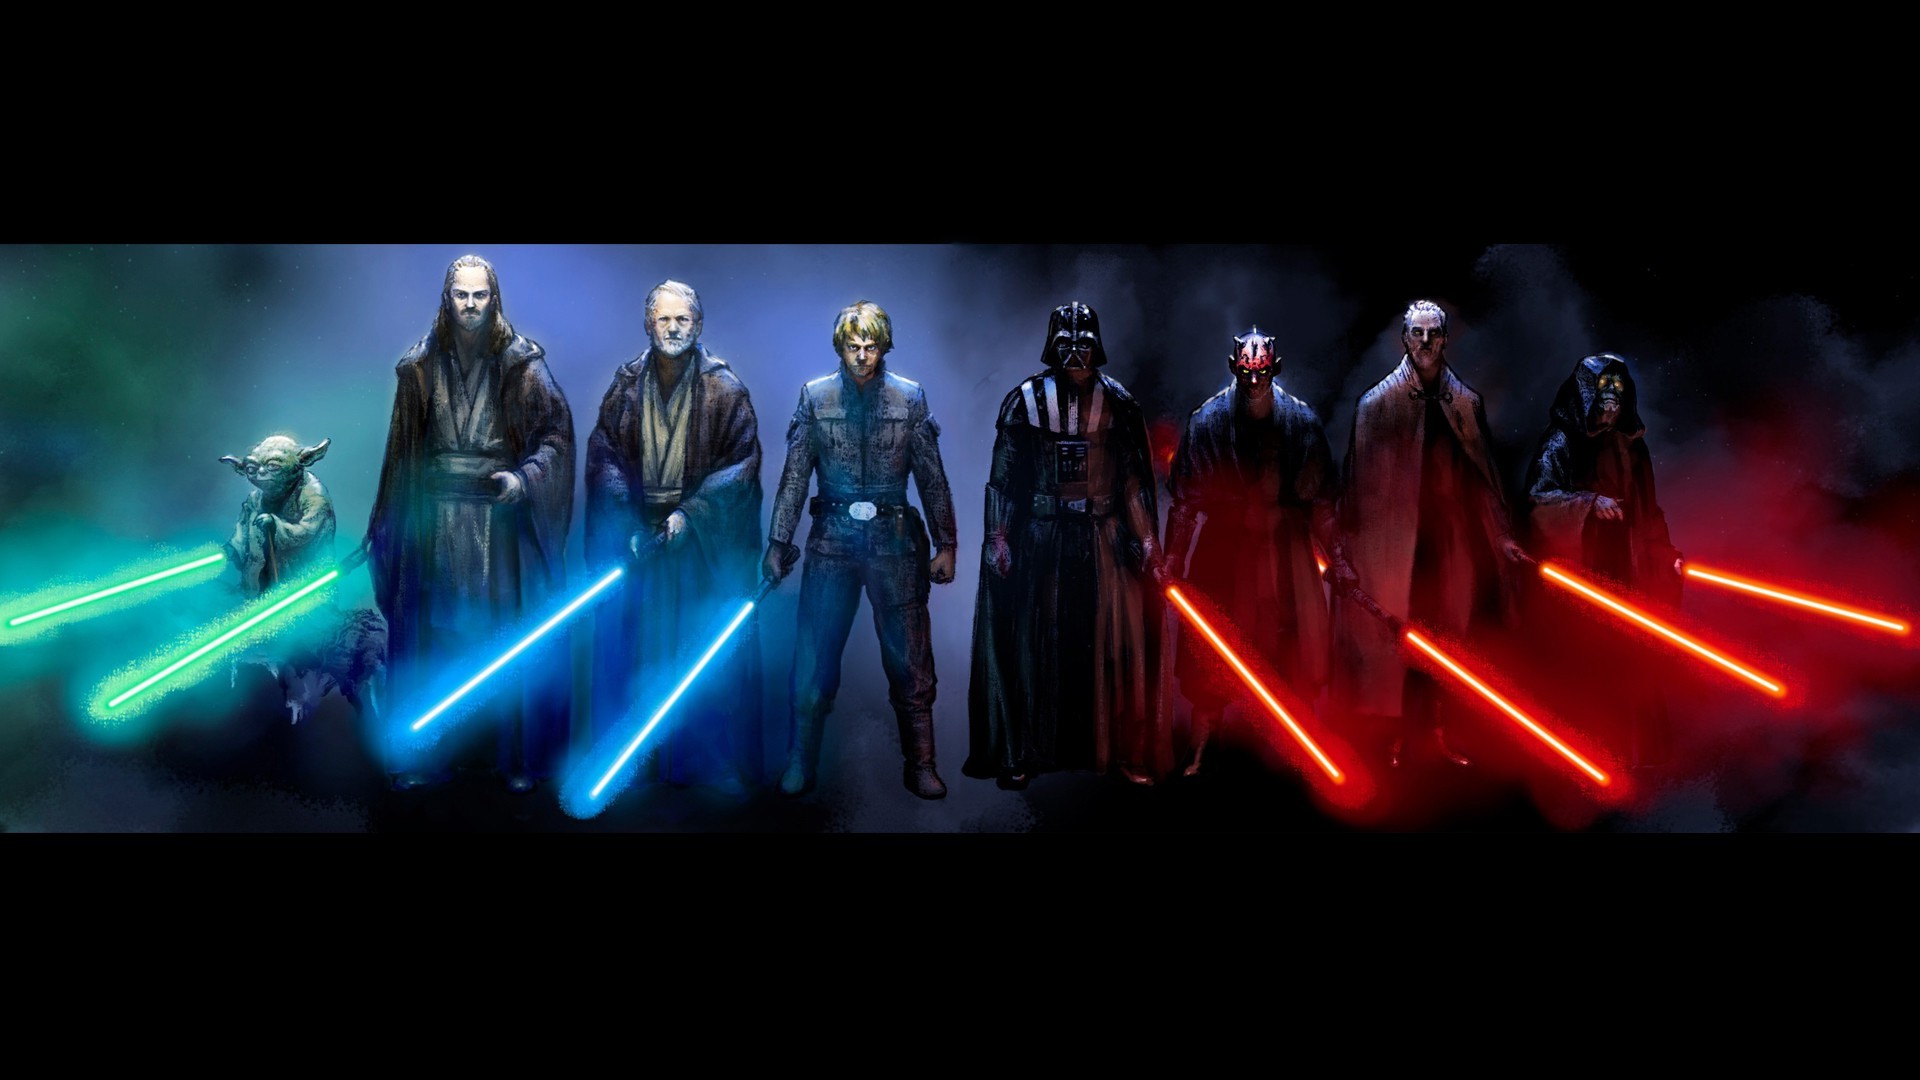 Star Wars, Luke Skywalker, Darth Vader, Darth Maul, Obi Wan Kenobi, Yoda Wallpaper